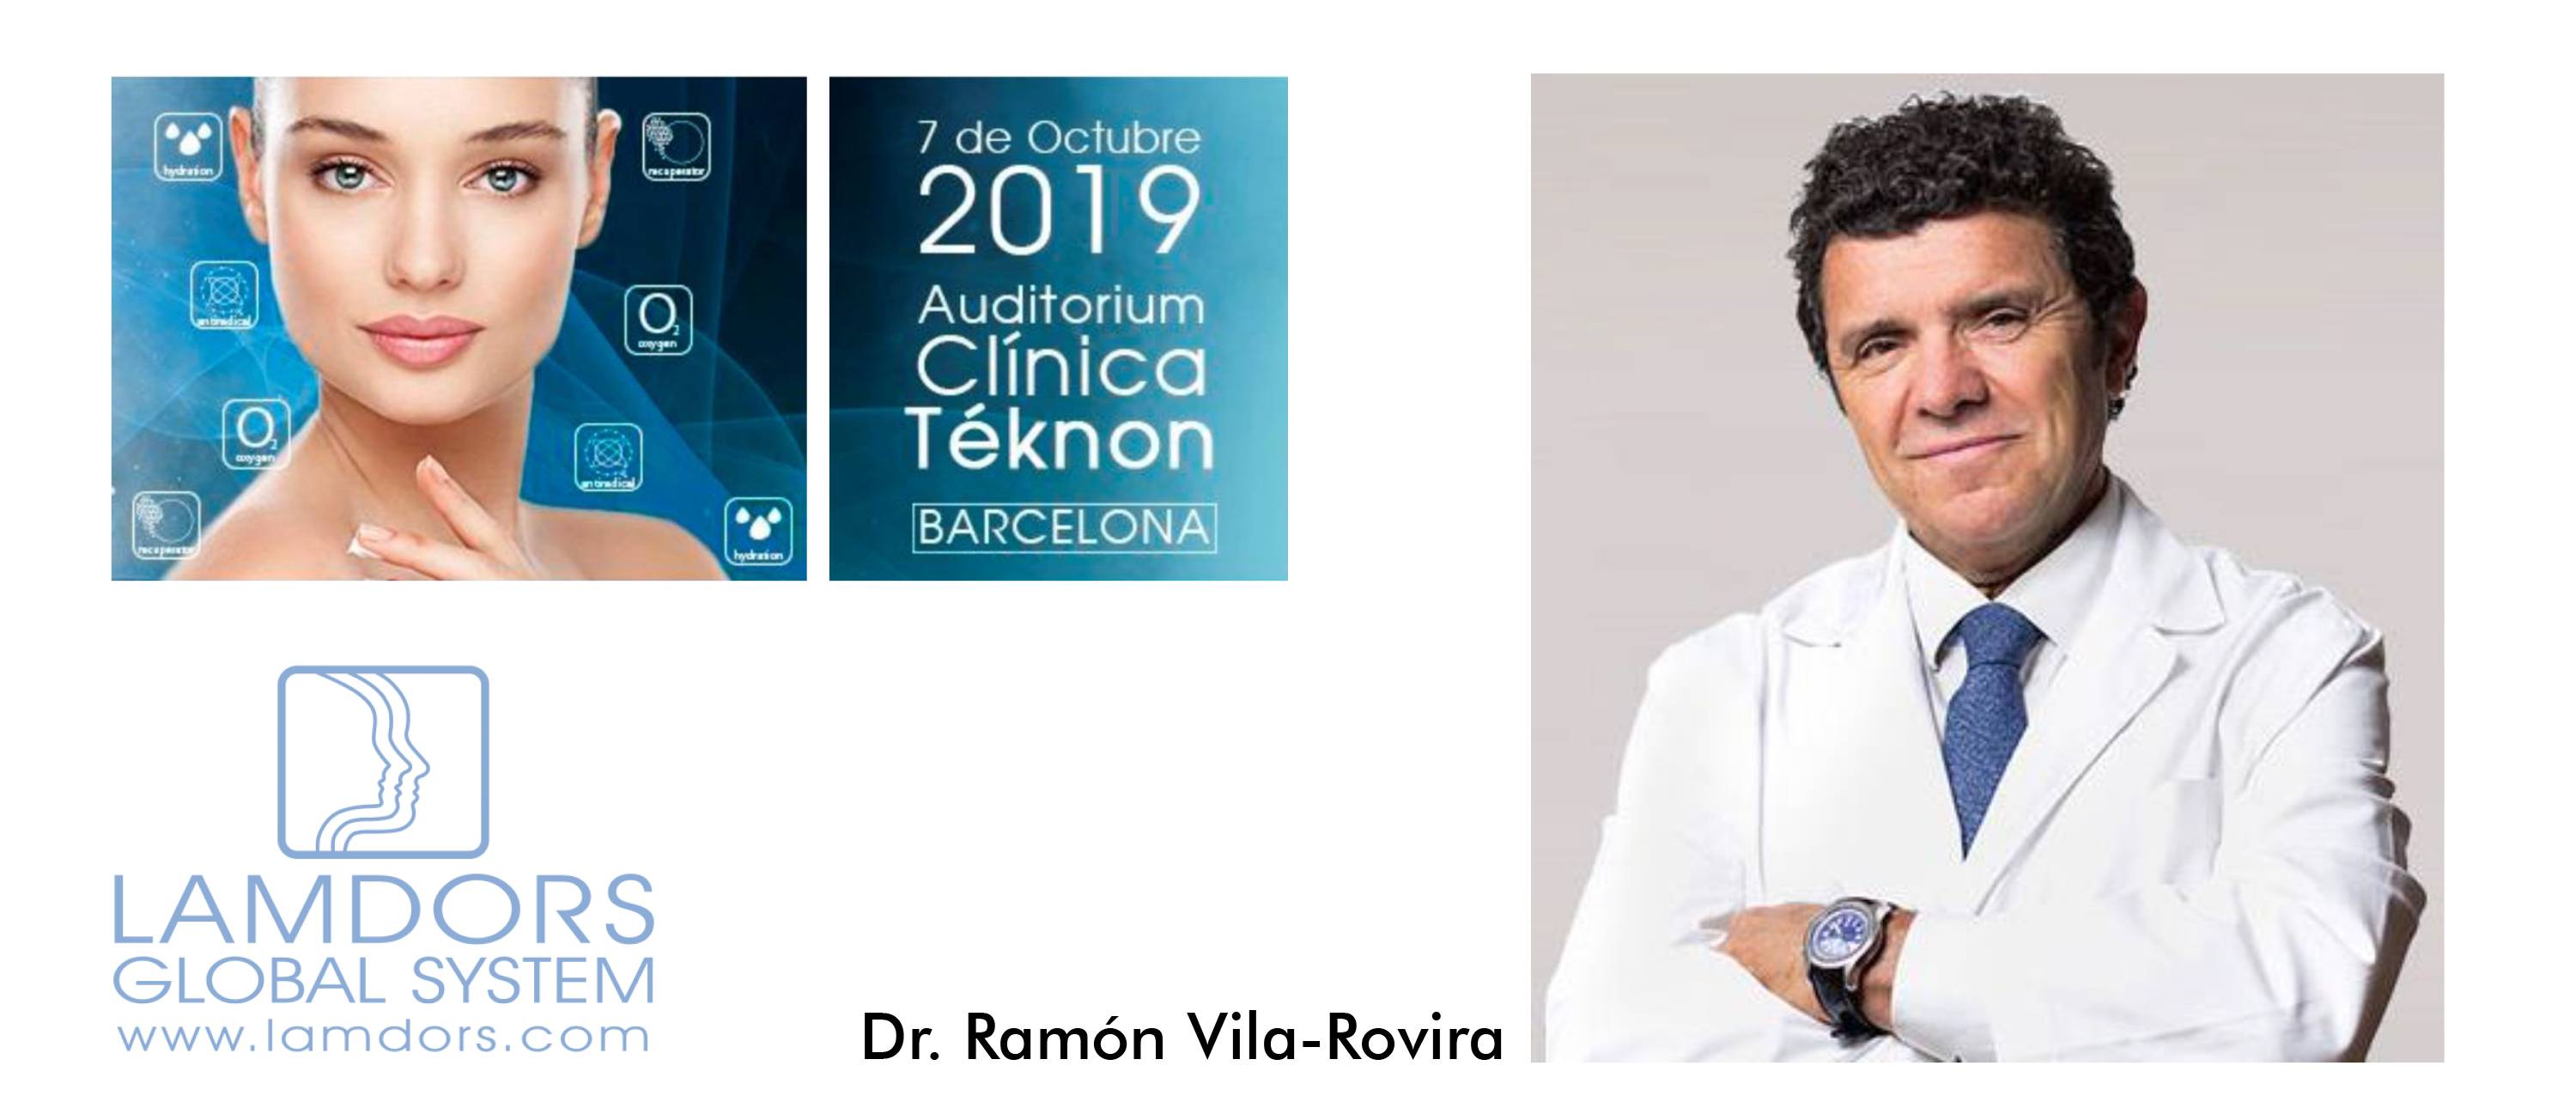 SIMPOSIO LAMDORS 2019. PONENCIA DR. RAMÓN VILA-ROVIRA (vídeo)